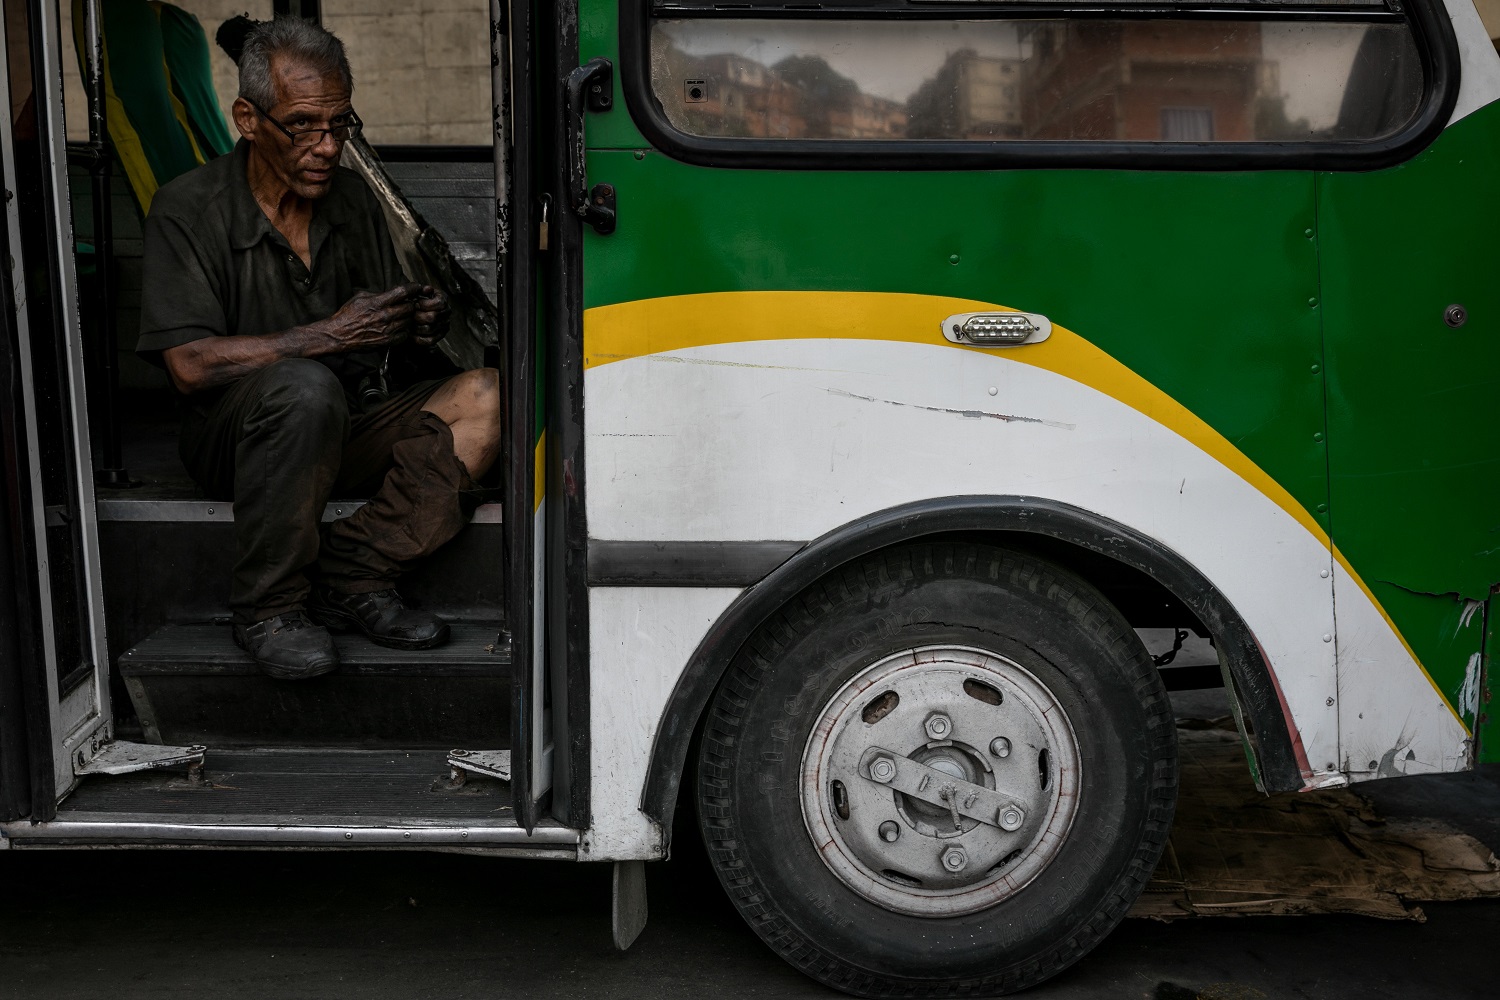 Fotografías del 10 de octubre del 2017, de un mecánico que trabaja en un bus de transporte público, en la ciudad de Caracas (Venezuela). Los altos costos de mantenimiento, la disminución de importación de repuestos, una galopante inflación y la escasez de efectivo tienen al sistema de transporte de Venezuela en jaque, mientras la población padece los efectos de esta crisis con un pasaje inestable y largos tiempos de espera para trasladarse. EFE/MIGUEL GUTIÉRREZ